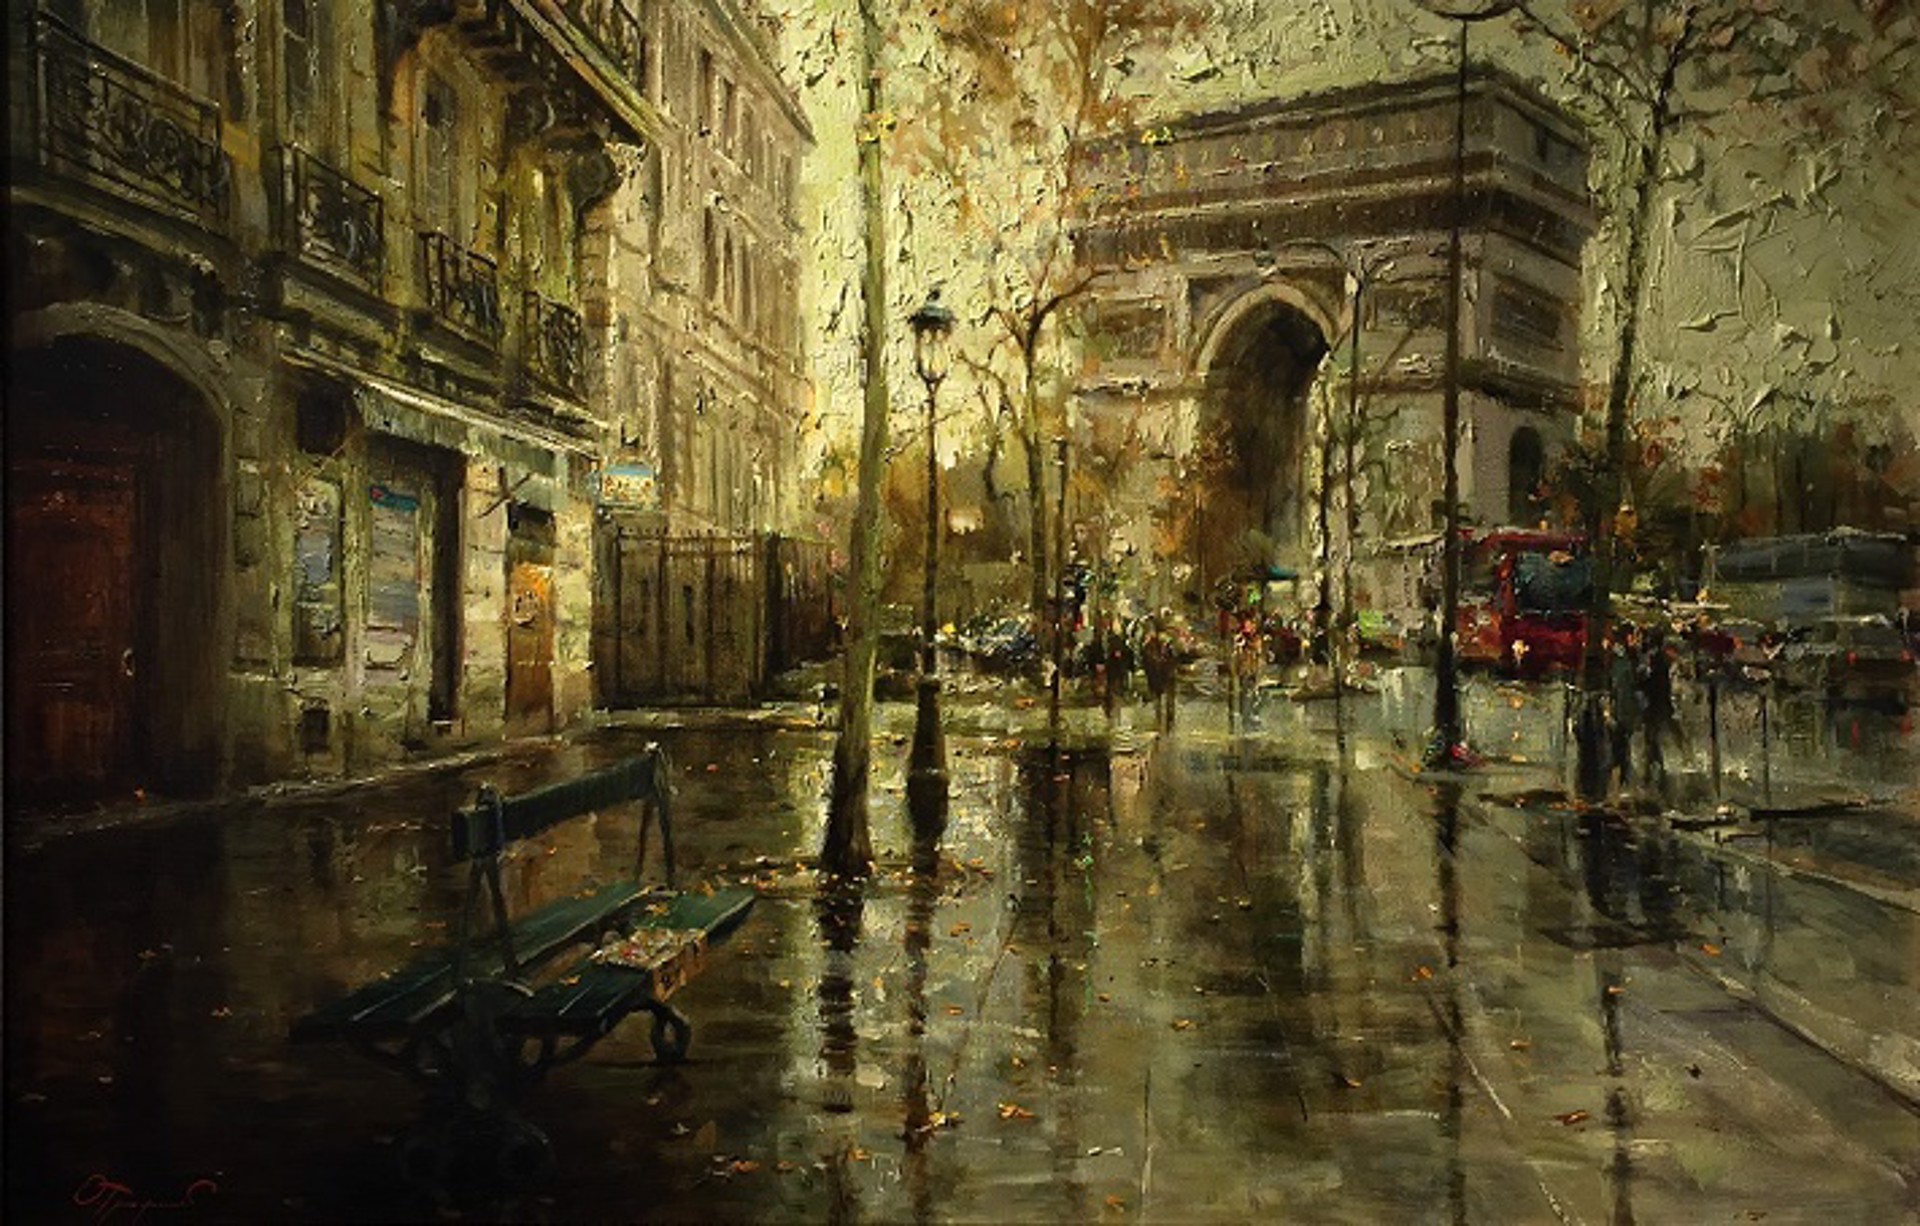 "Autumn In Paris" by Oleg Trofimov